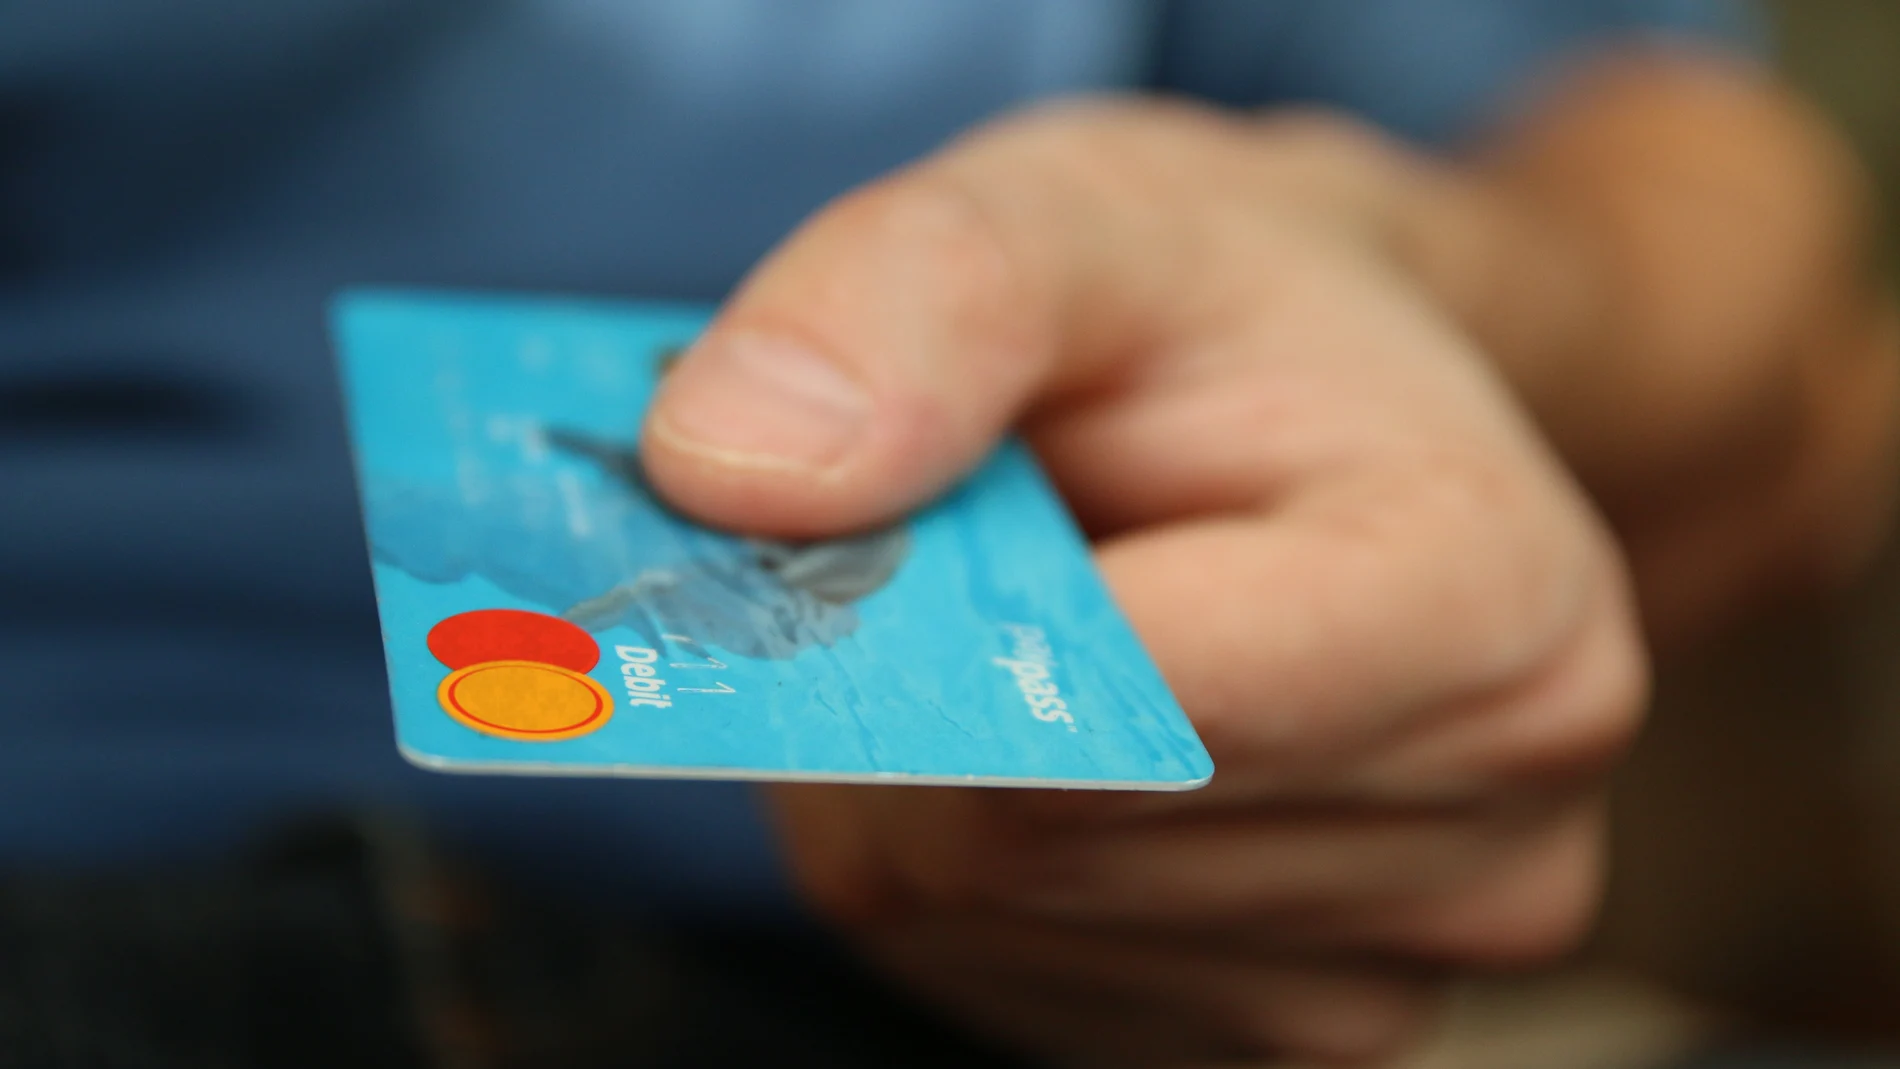 Una mano sosteniendo una tarjeta... ¿de crédito o de débito?